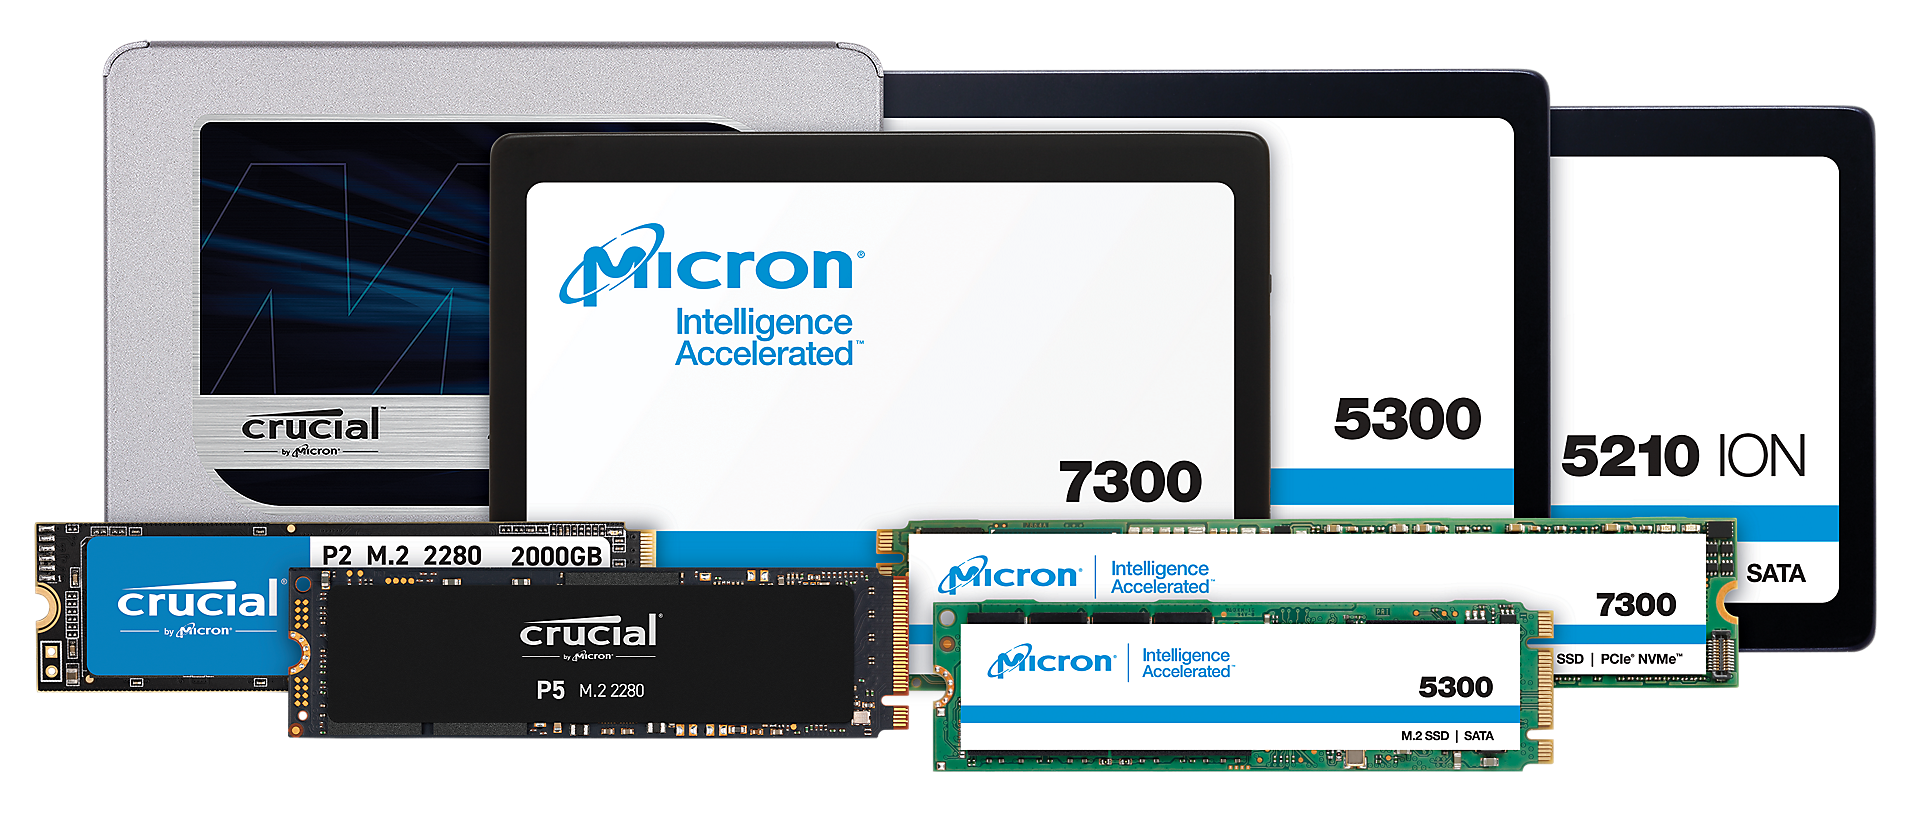 Browse Micron Enterprise & Client SSD